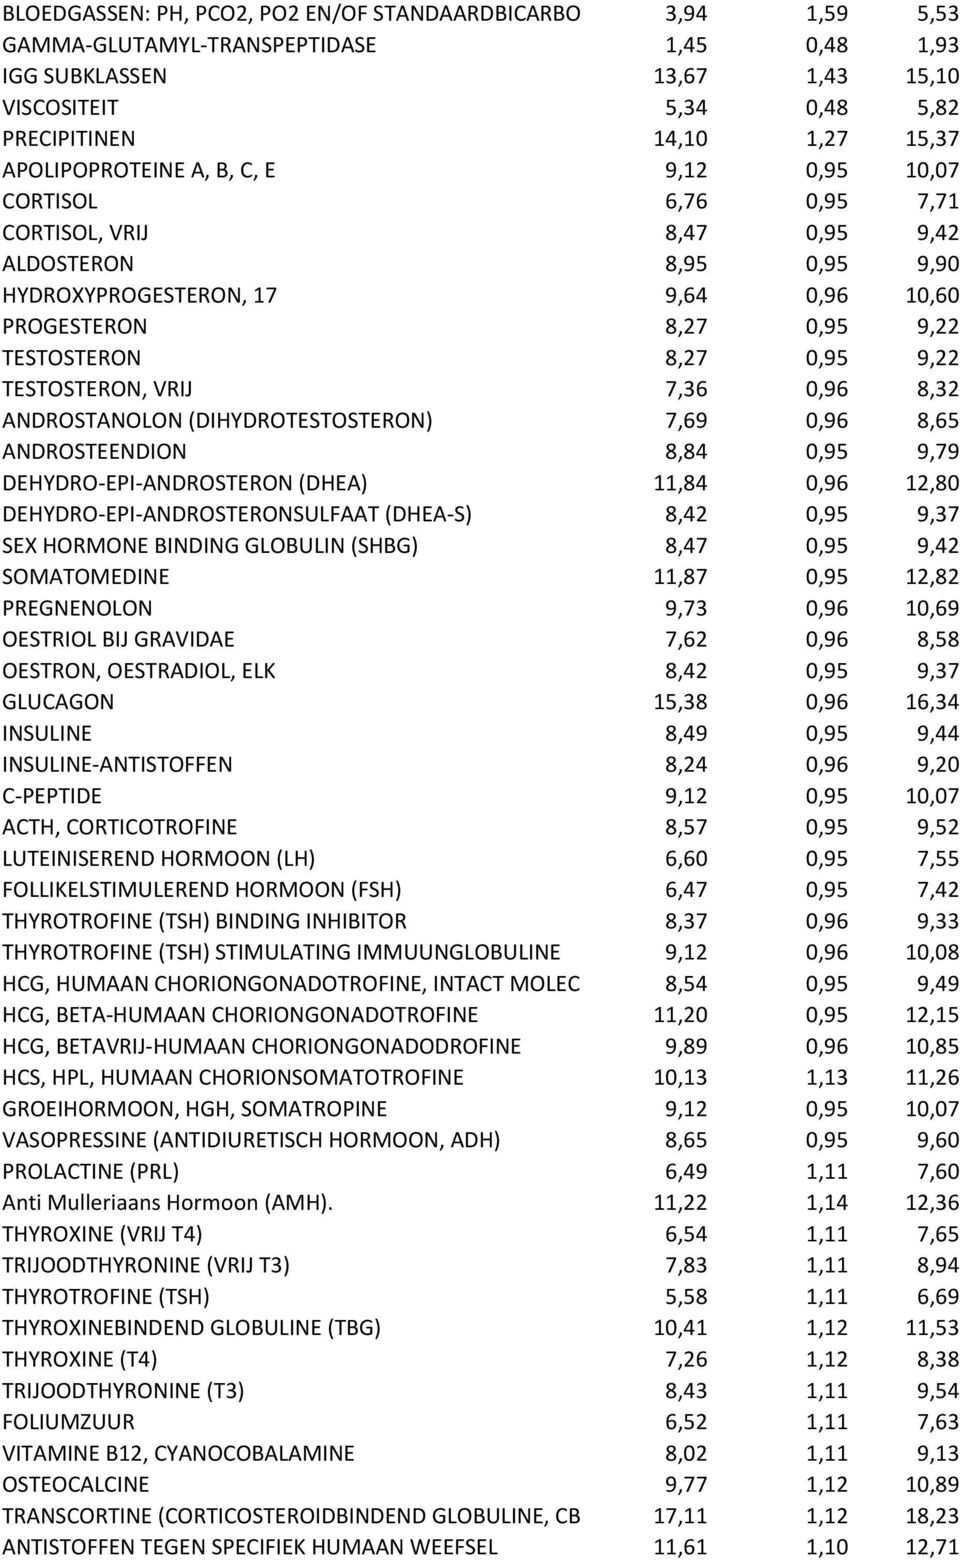 PROGESTERON 8,27 0,95 9,22 TESTOSTERON 8,27 0,95 9,22 TESTOSTERON, VRIJ 7,36 0,96 8,32 ANDROSTANOLON (DIHYDROTESTOSTERON) 7,69 0,96 8,65 ANDROSTEENDION 8,84 0,95 9,79 DEHYDRO-EPI-ANDROSTERON (DHEA)